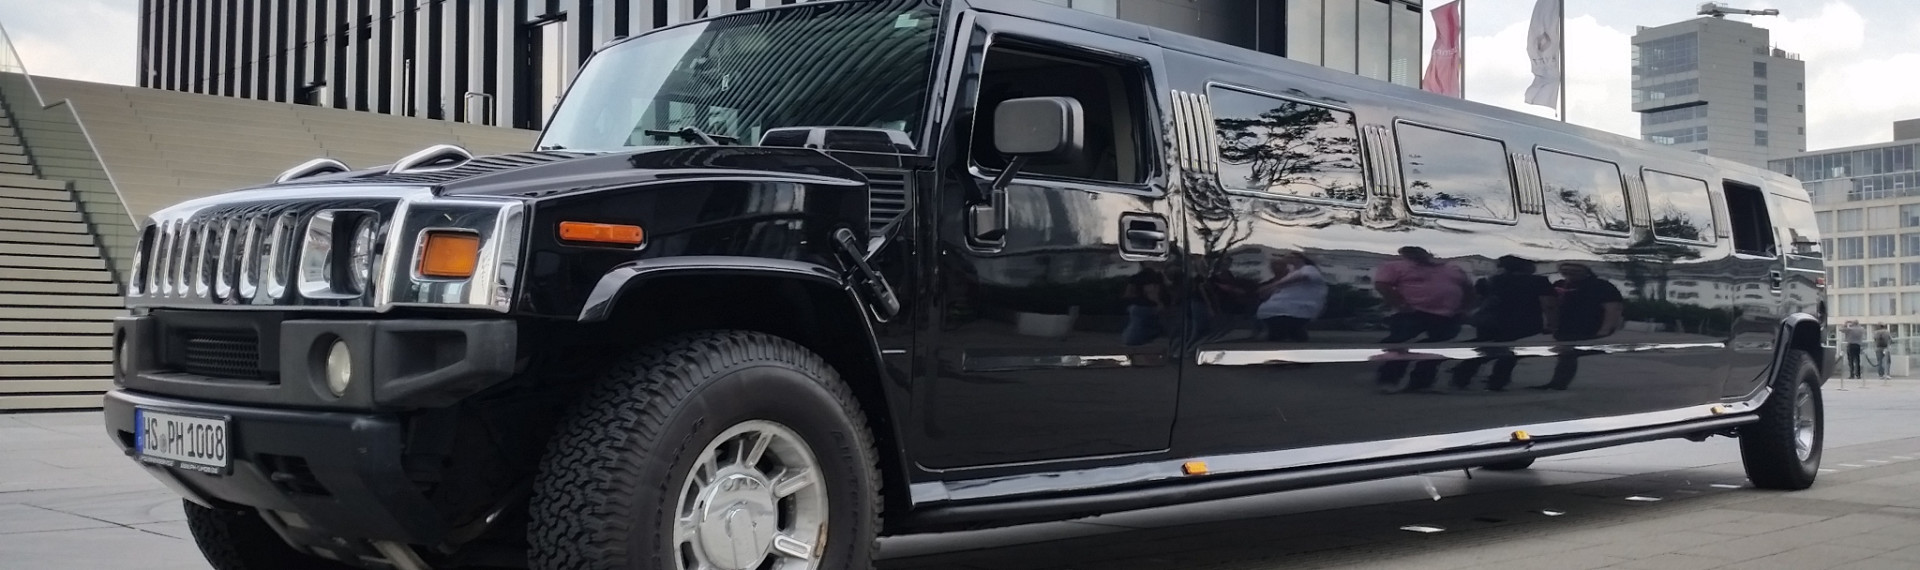 Limousine Hummer à Bordeaux : voyage de luxe d'1 heure | EVG.fr